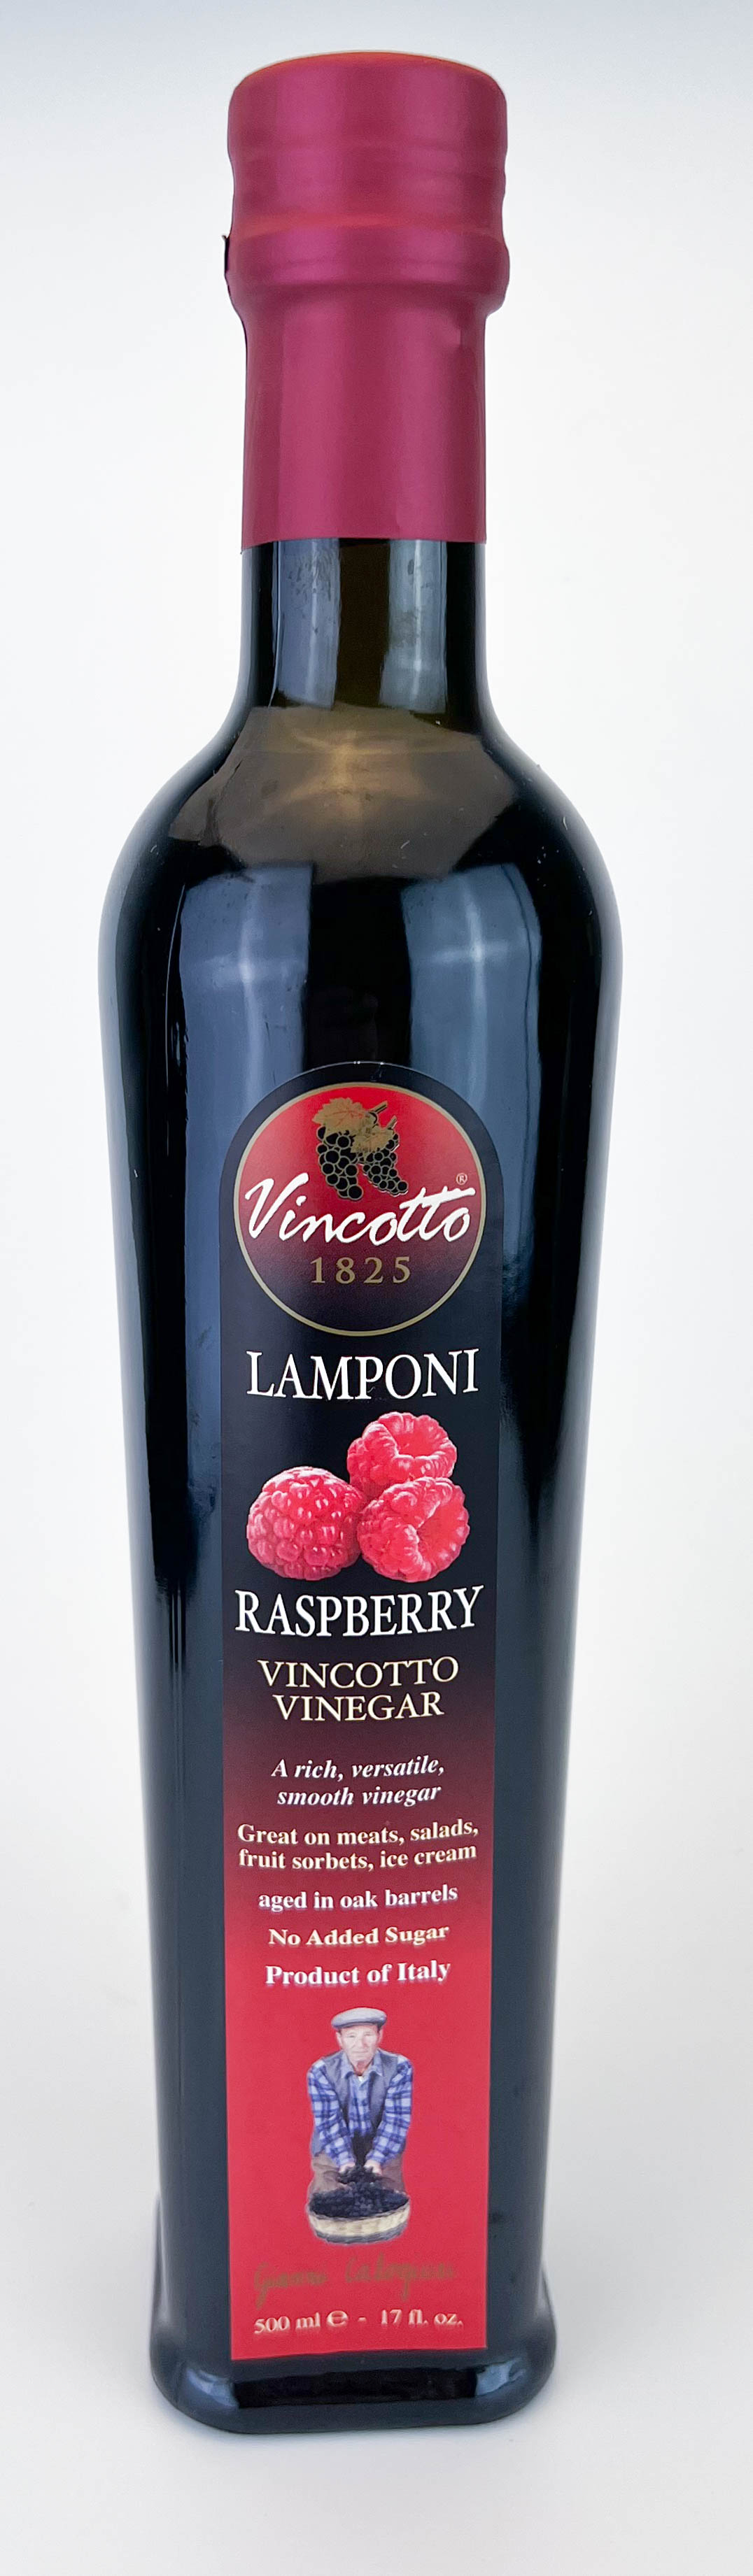 Vincotto con Lamponi (frambuesas) botella de 500ml